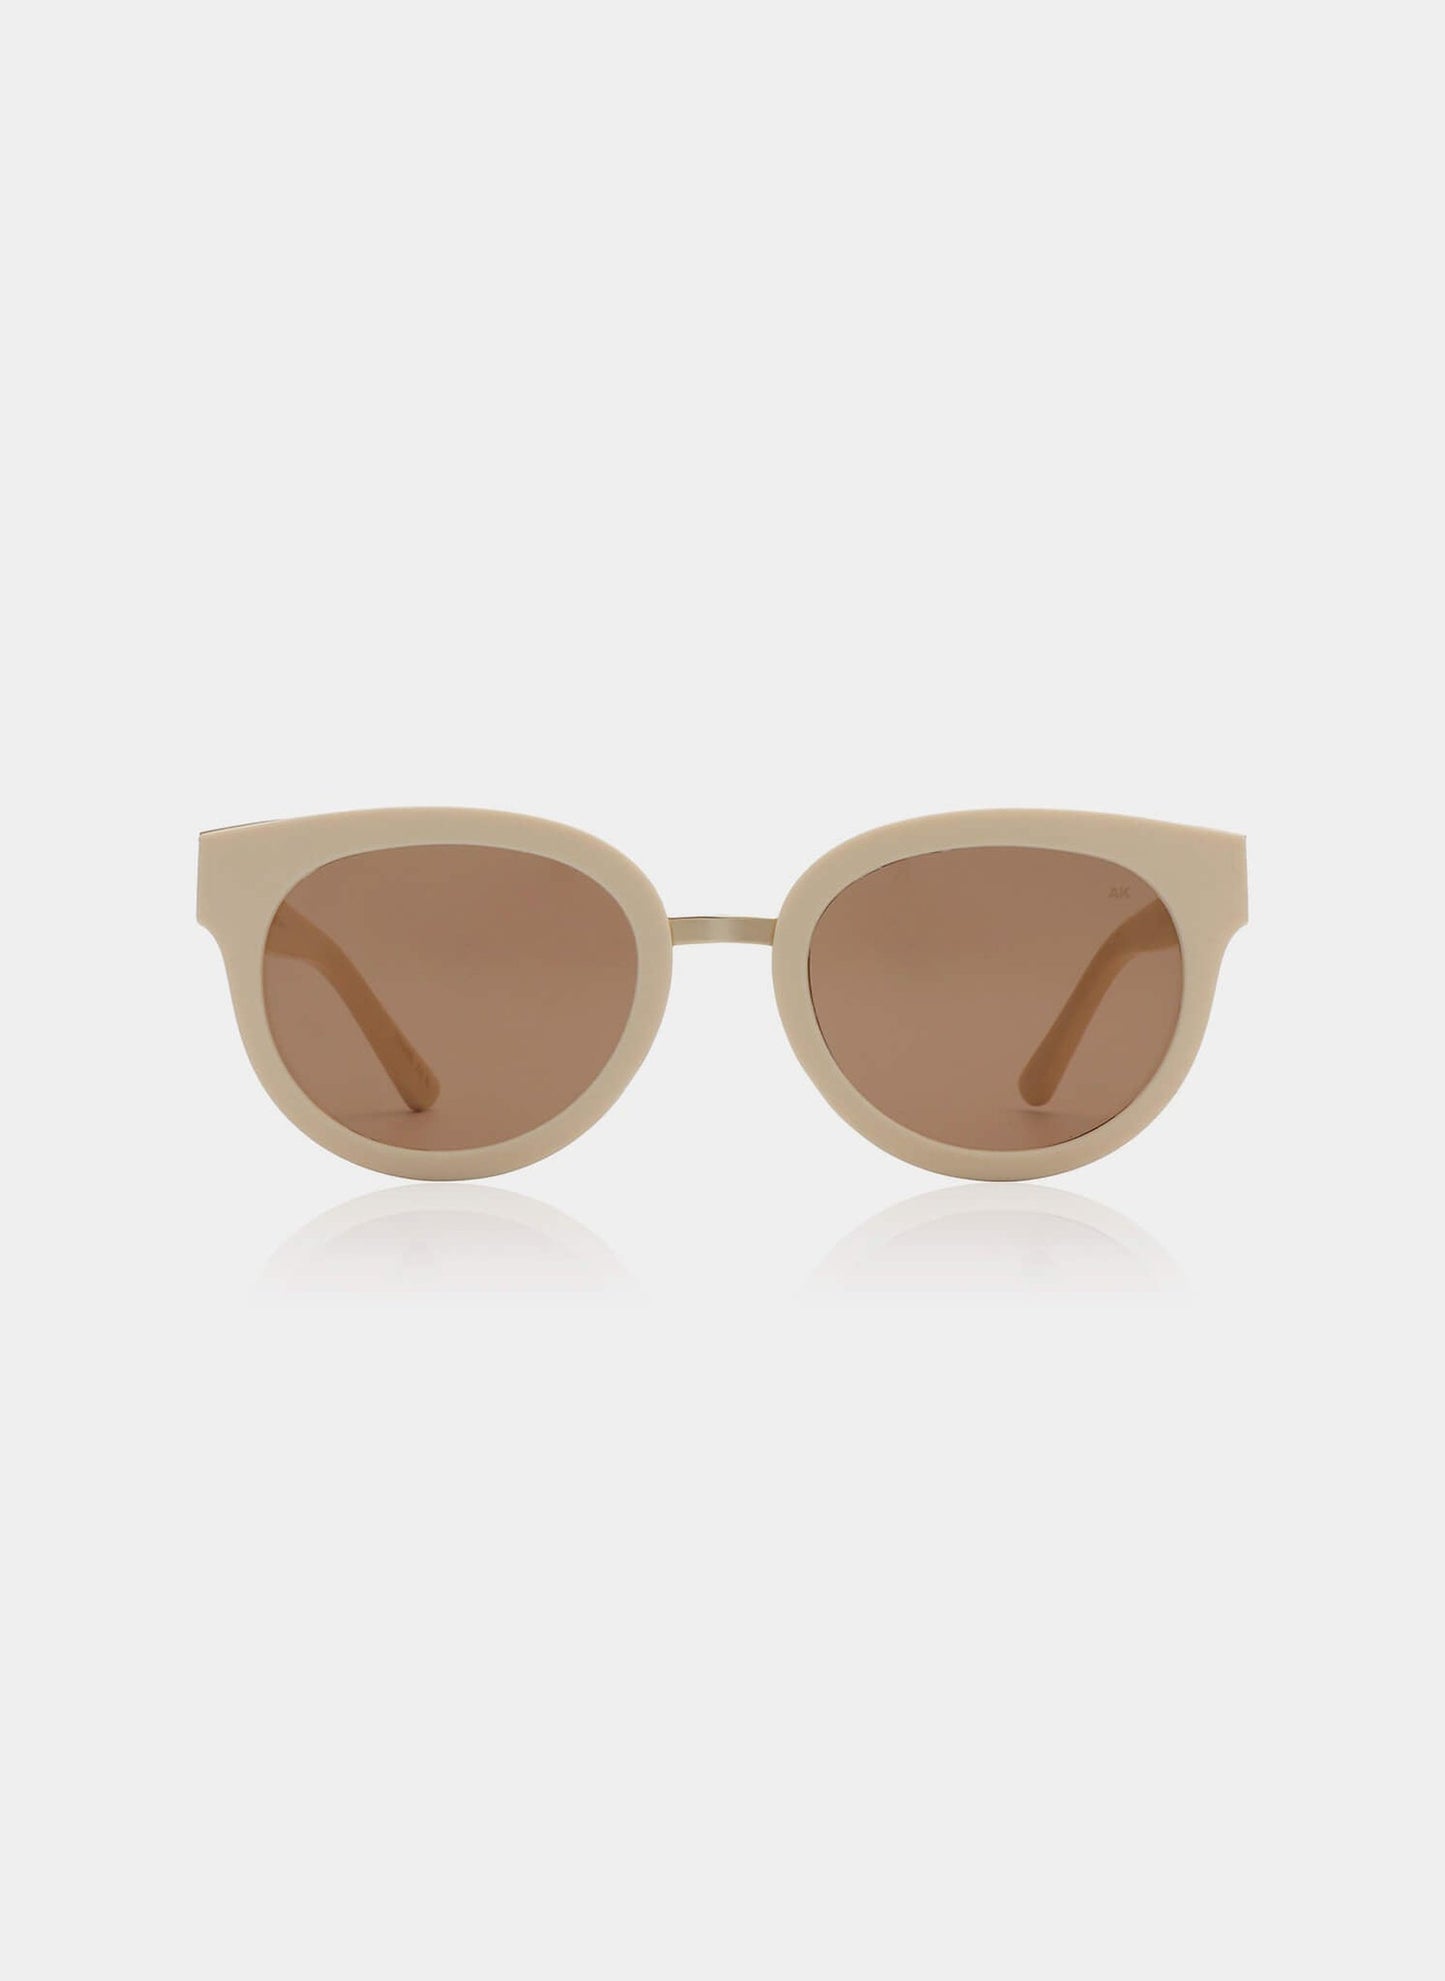 Jolie Sunglasses - Cream